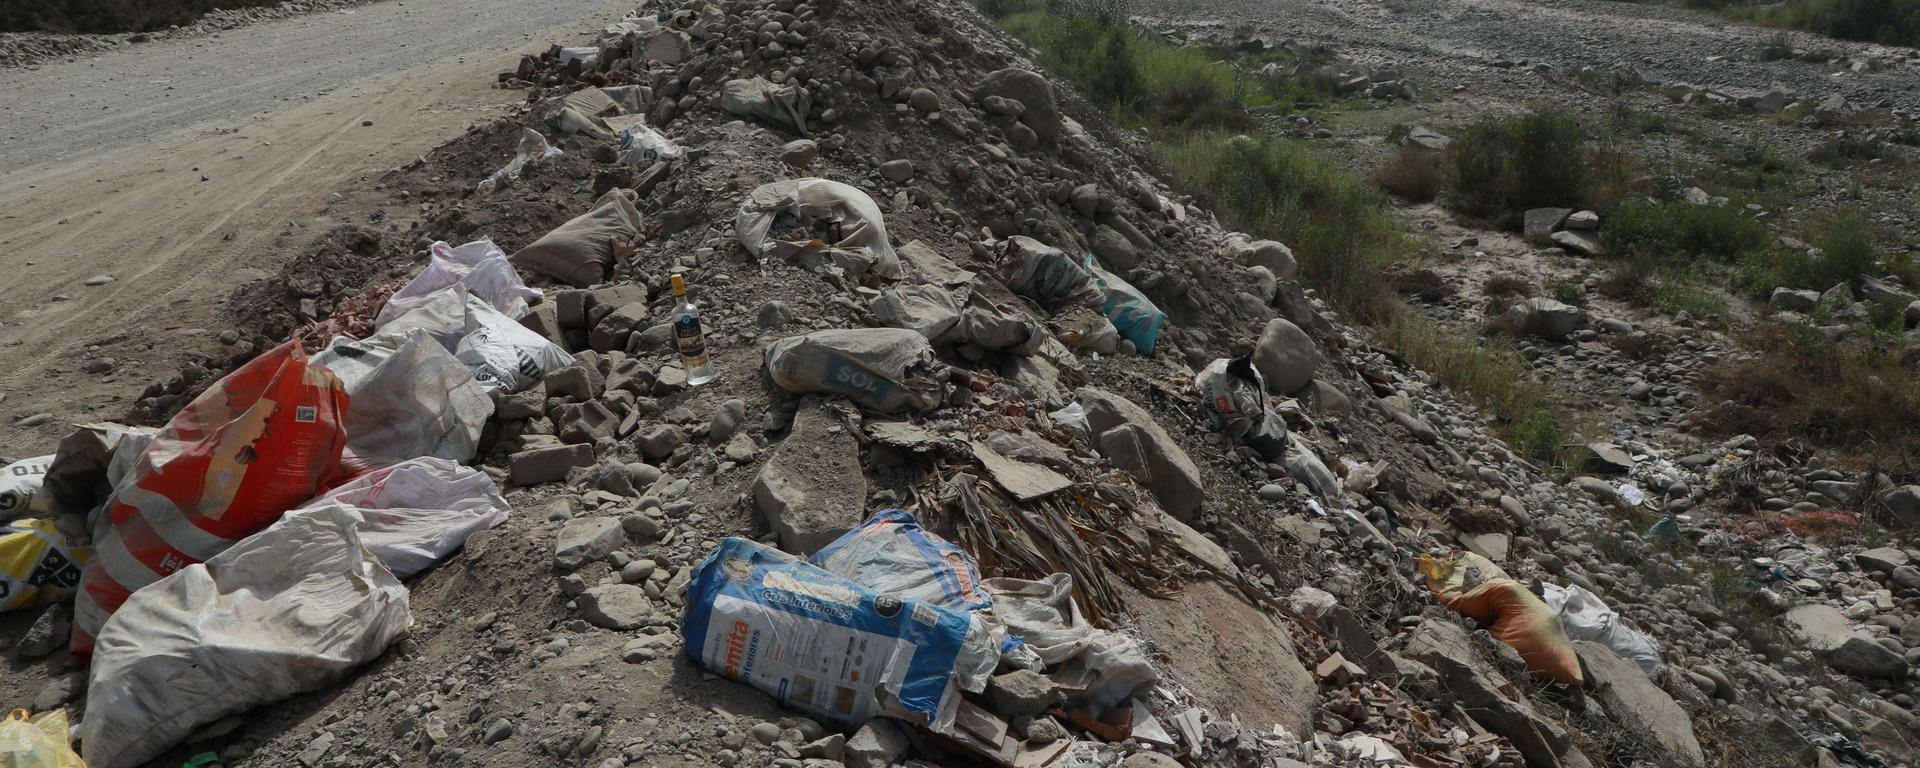 La contaminación y las invasiones mutilan el río Lurín en Cieneguilla